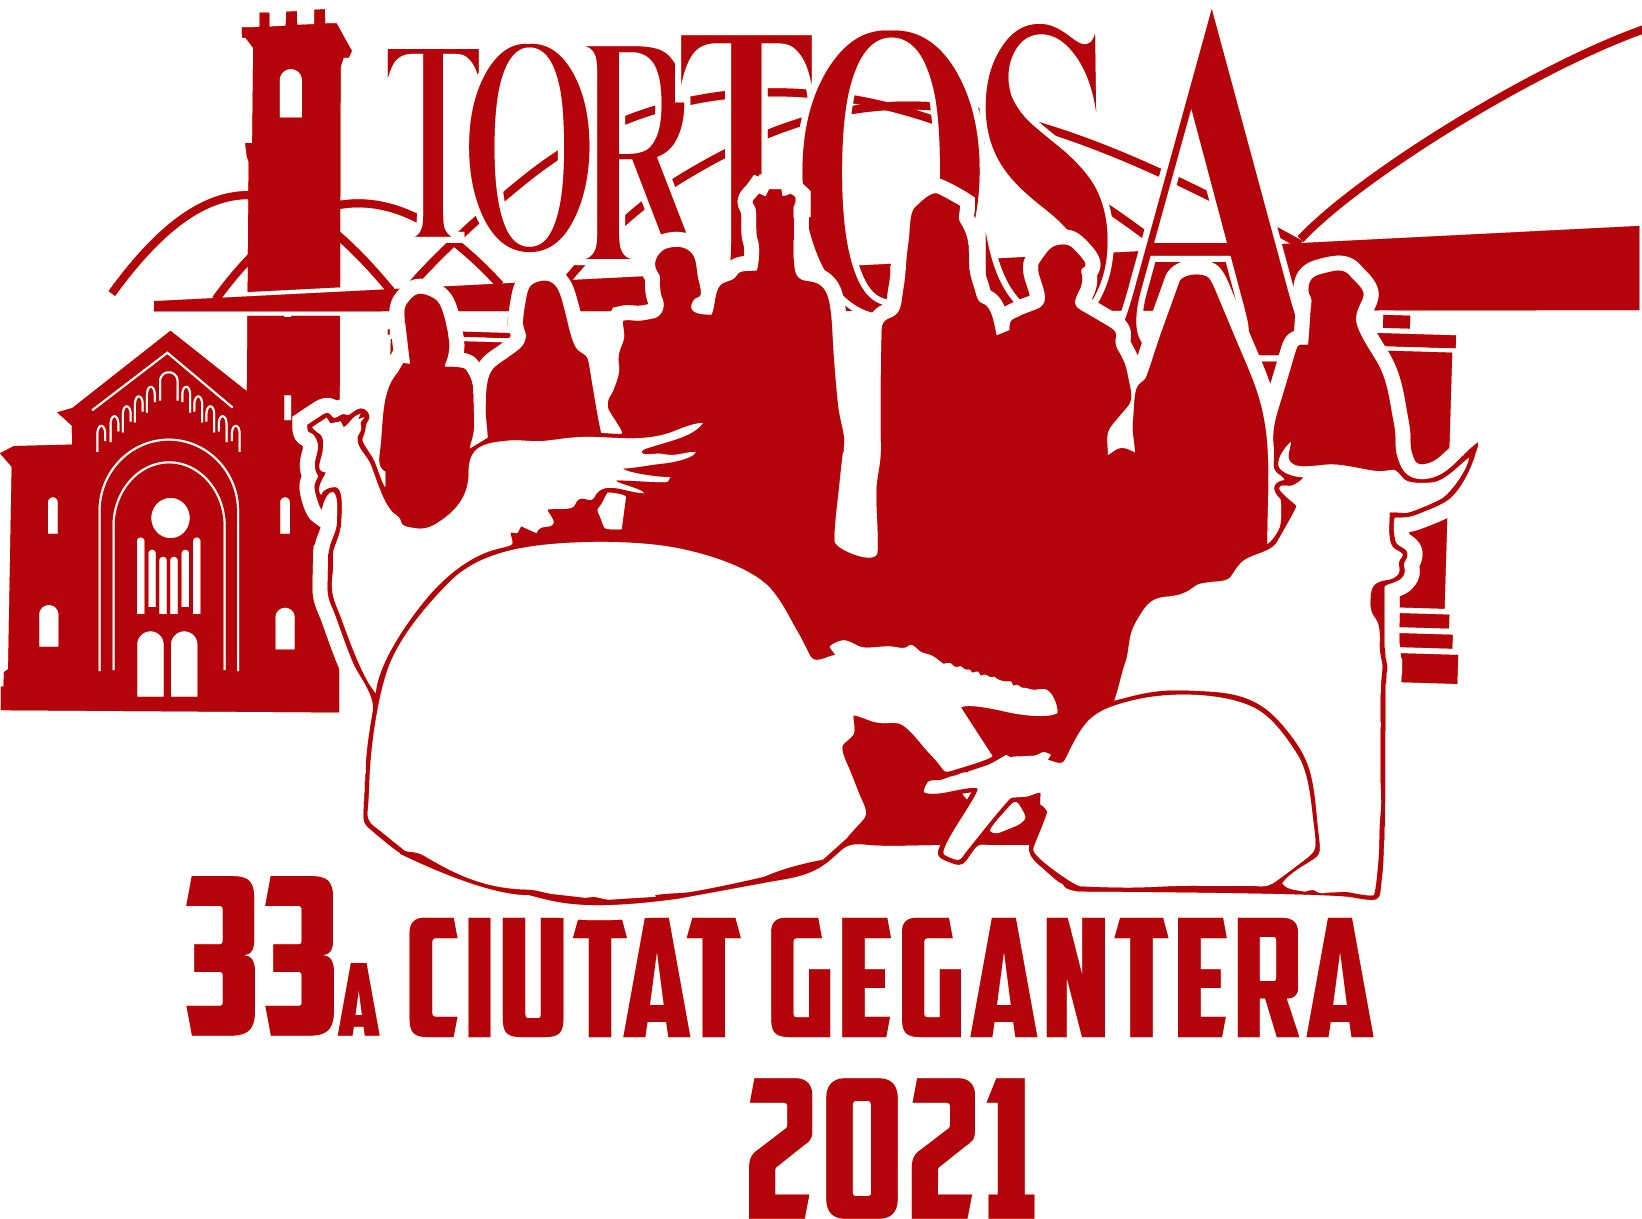 Logo Ciutat gegantera 2021